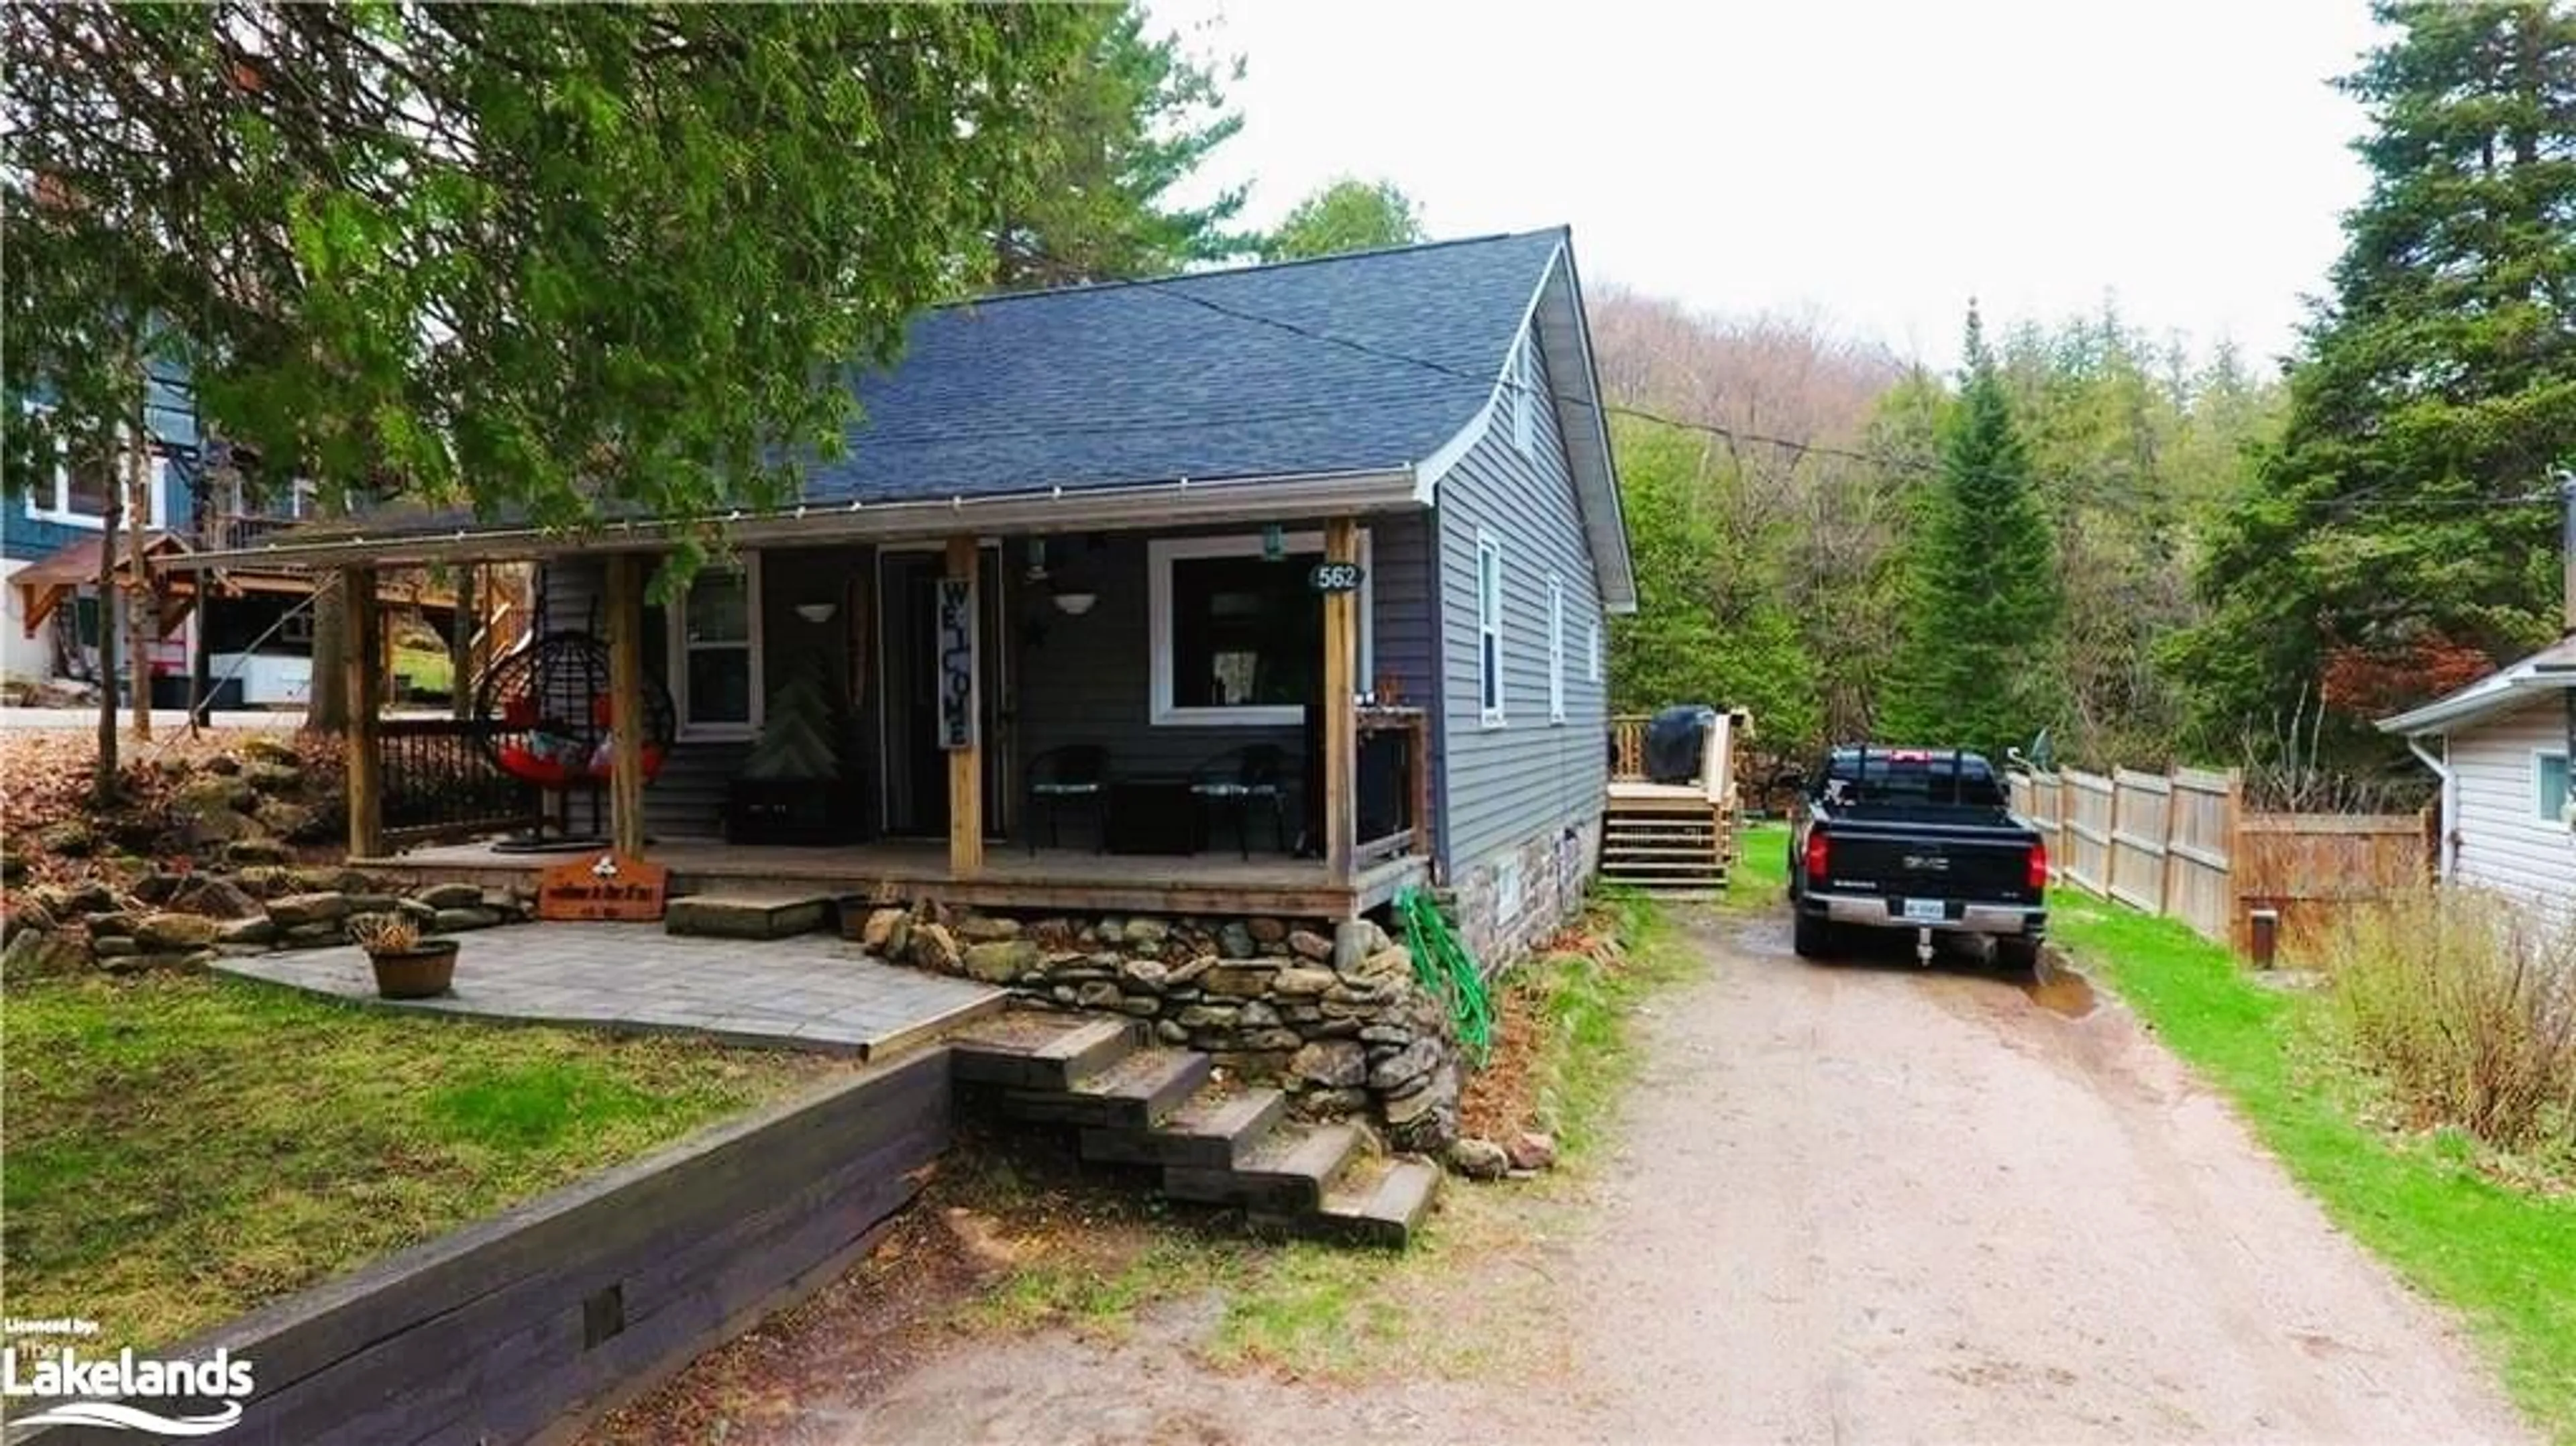 Cottage for 562 Mountain St, Haliburton Ontario K0M 1S0